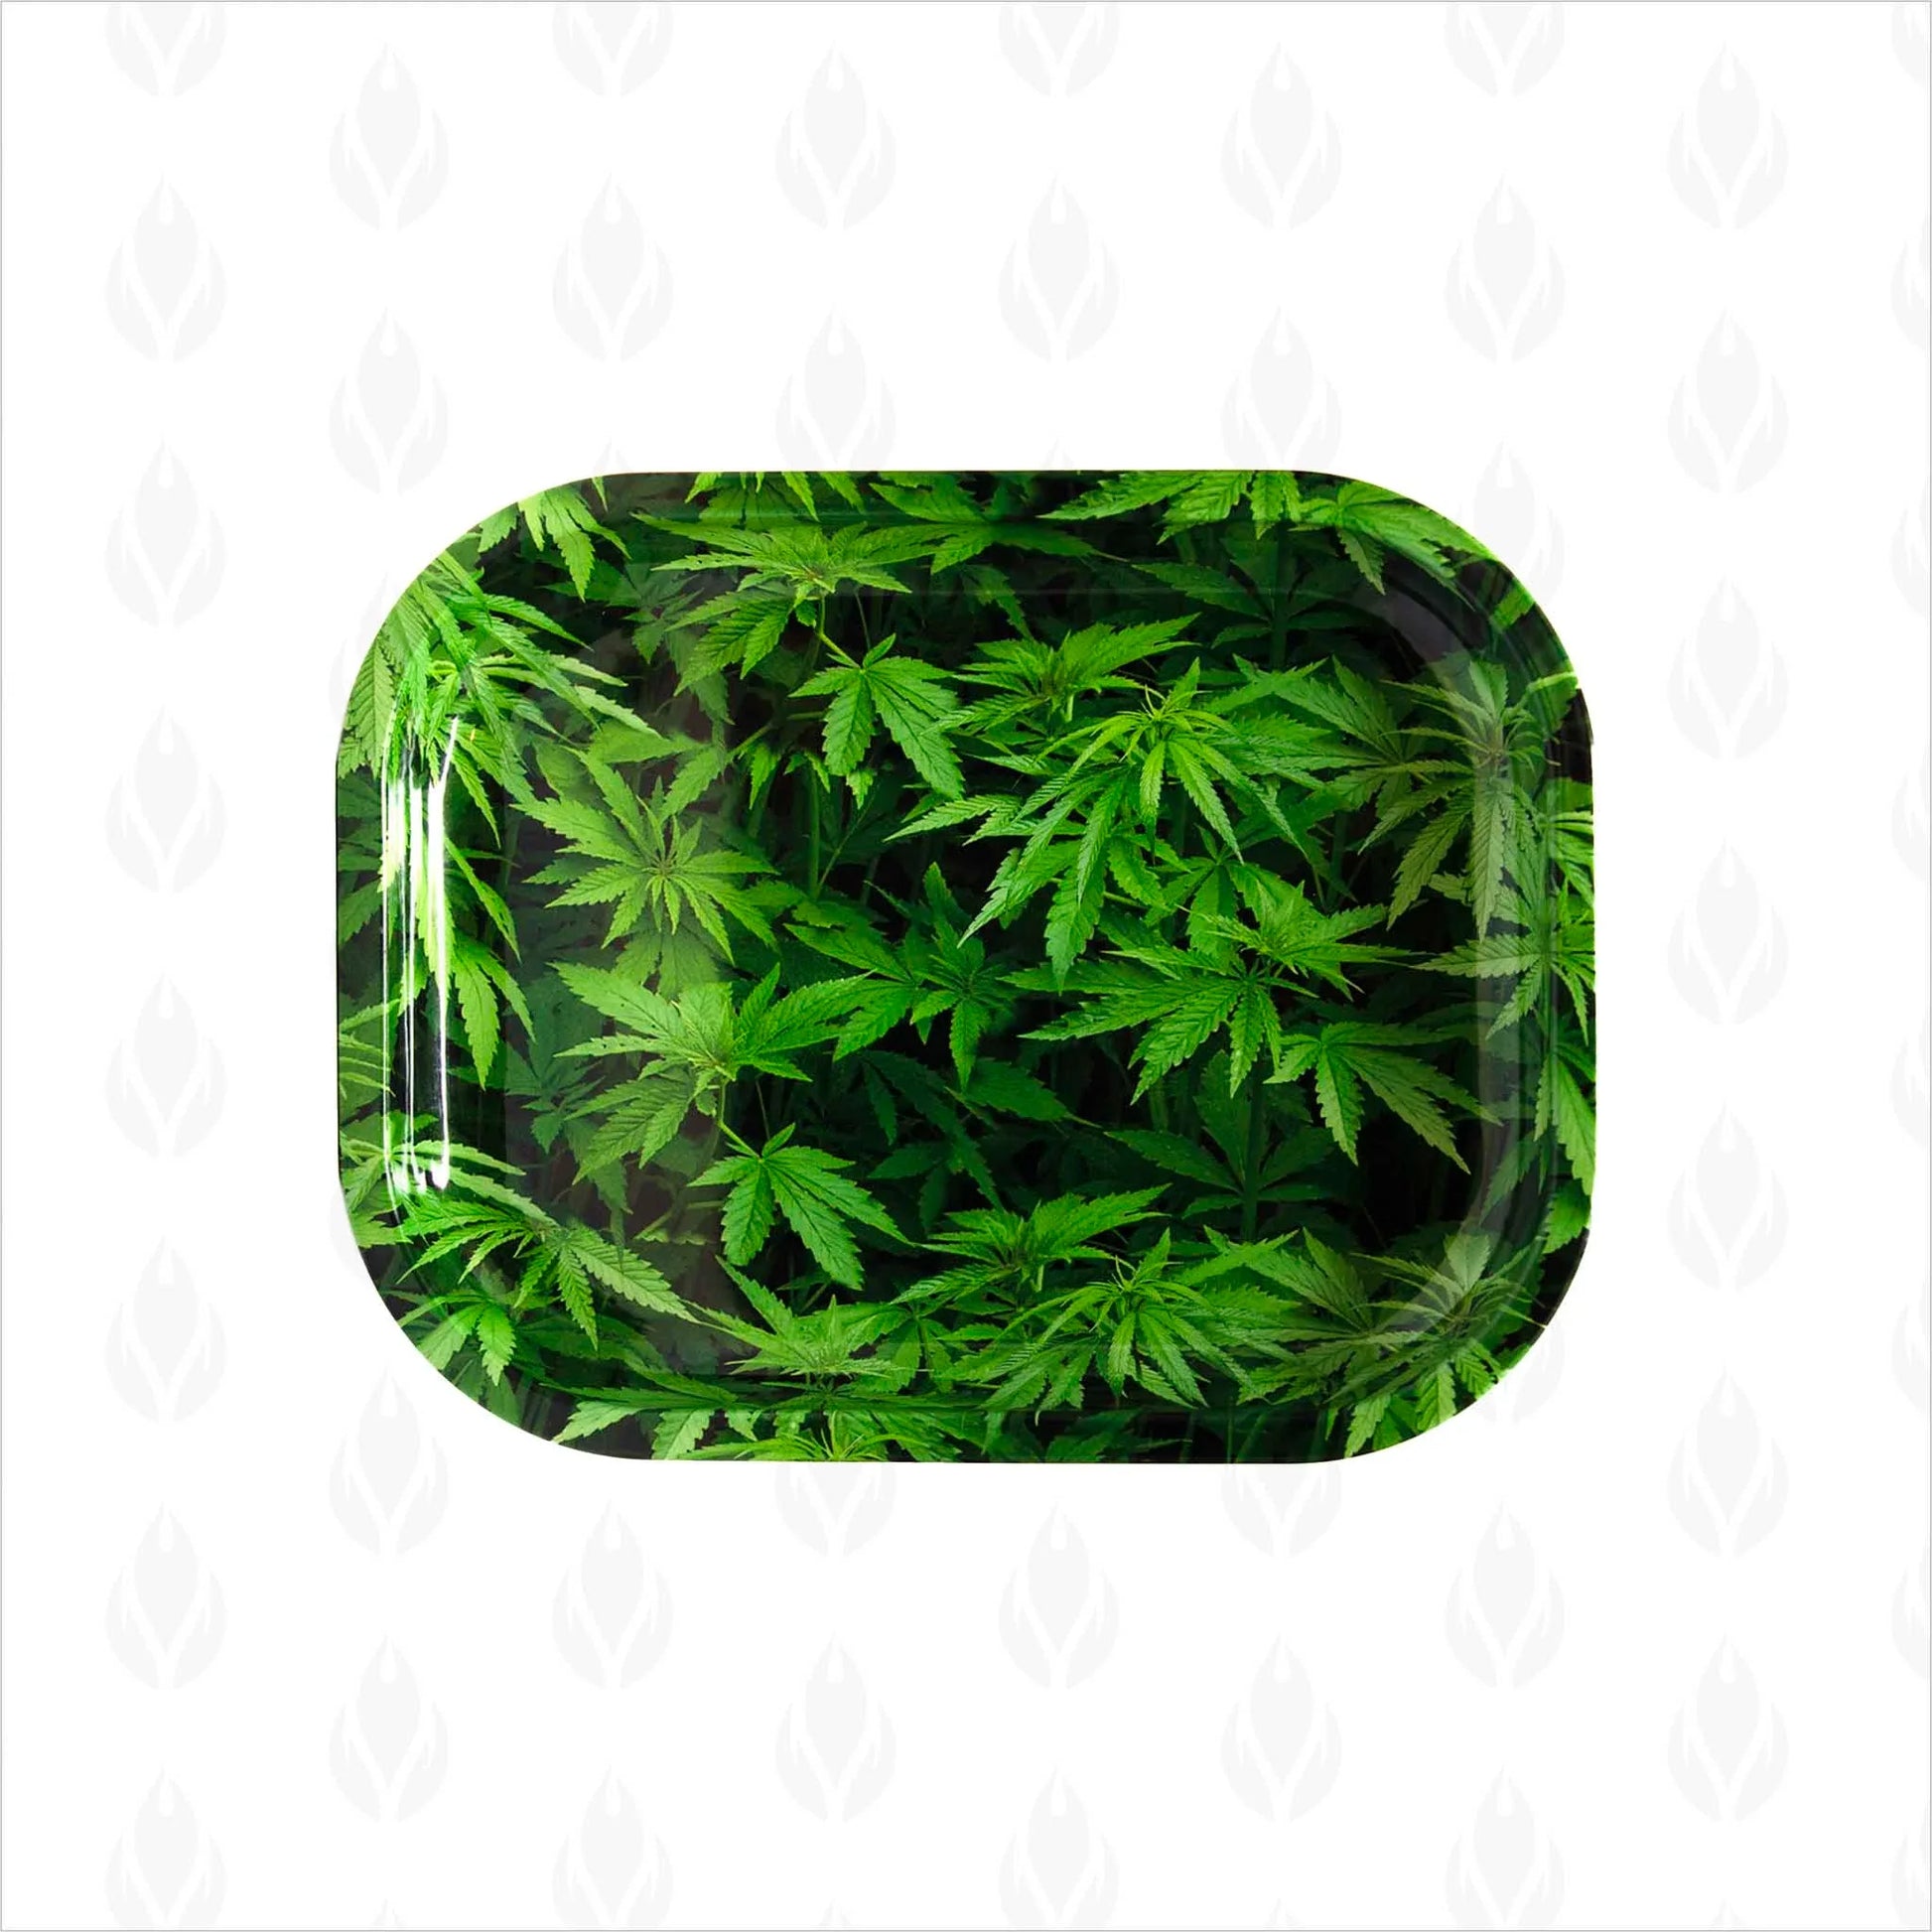 Charola metálica con un diseño estampado de hojas de cannabis verdes